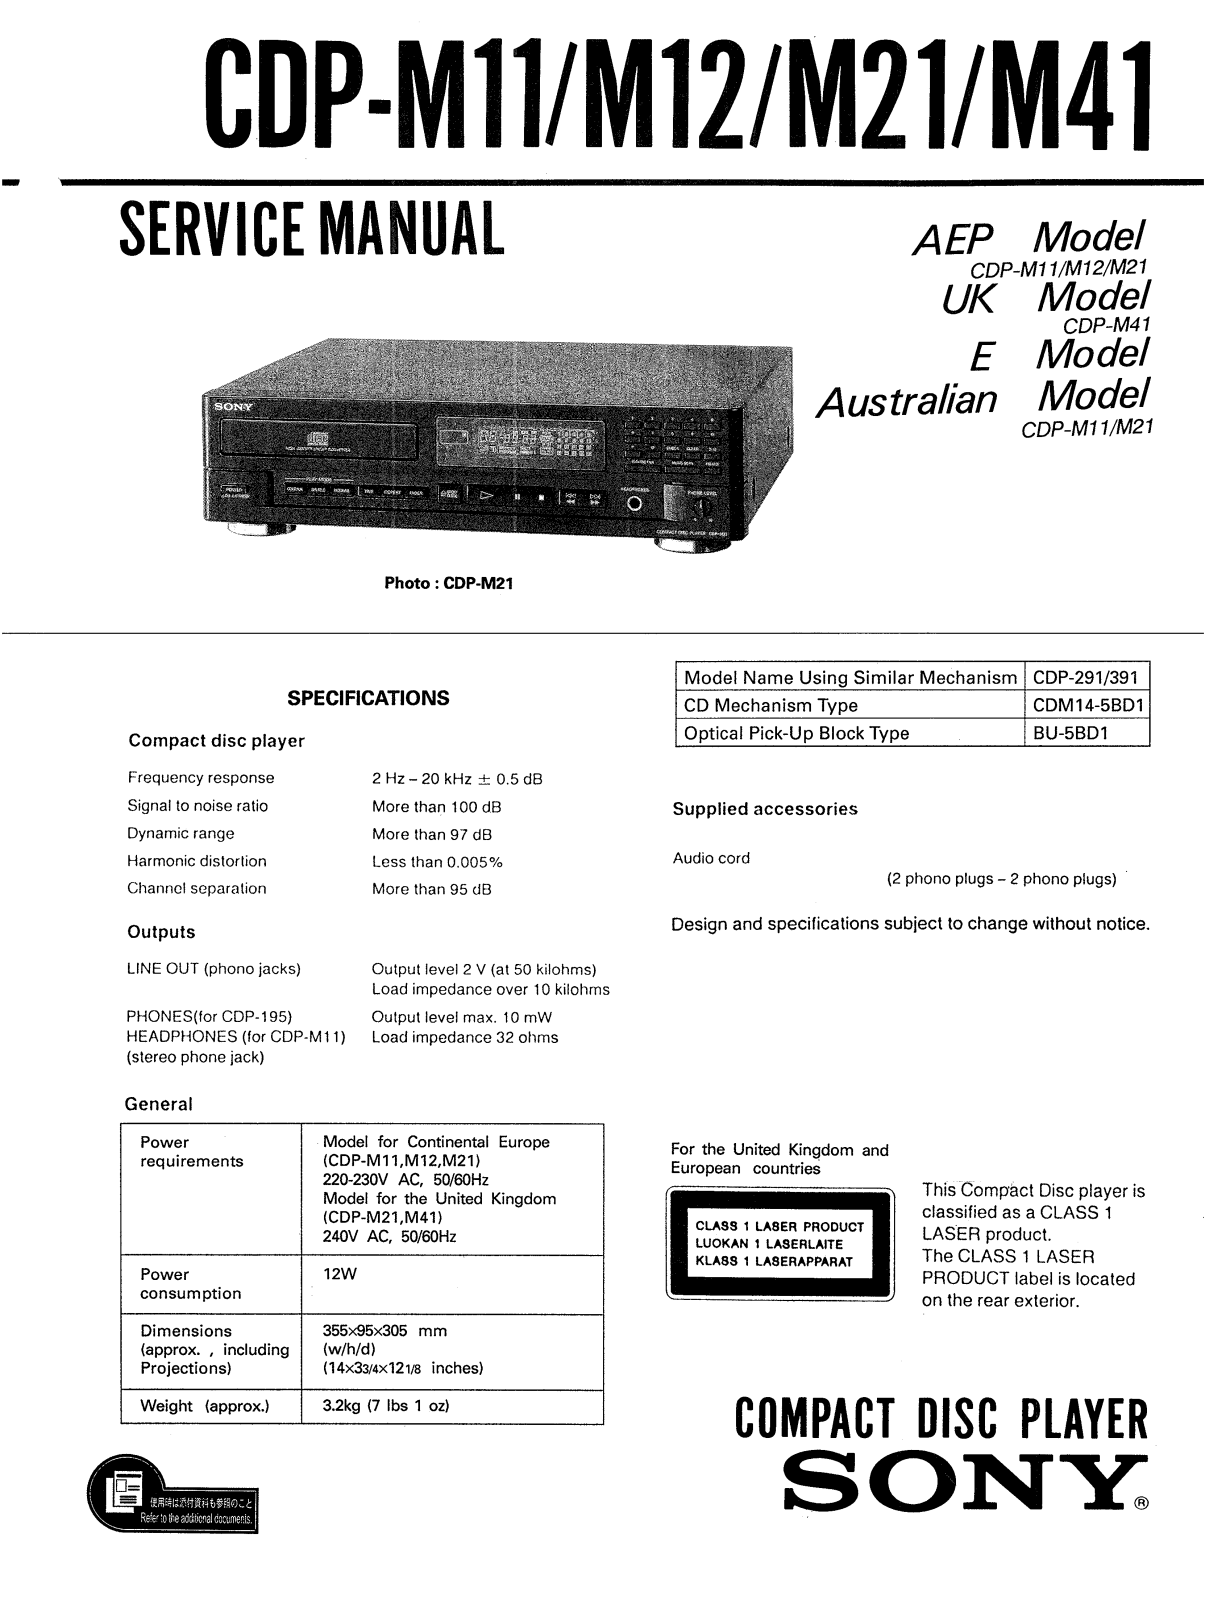 Sony CDPM-41 Service manual